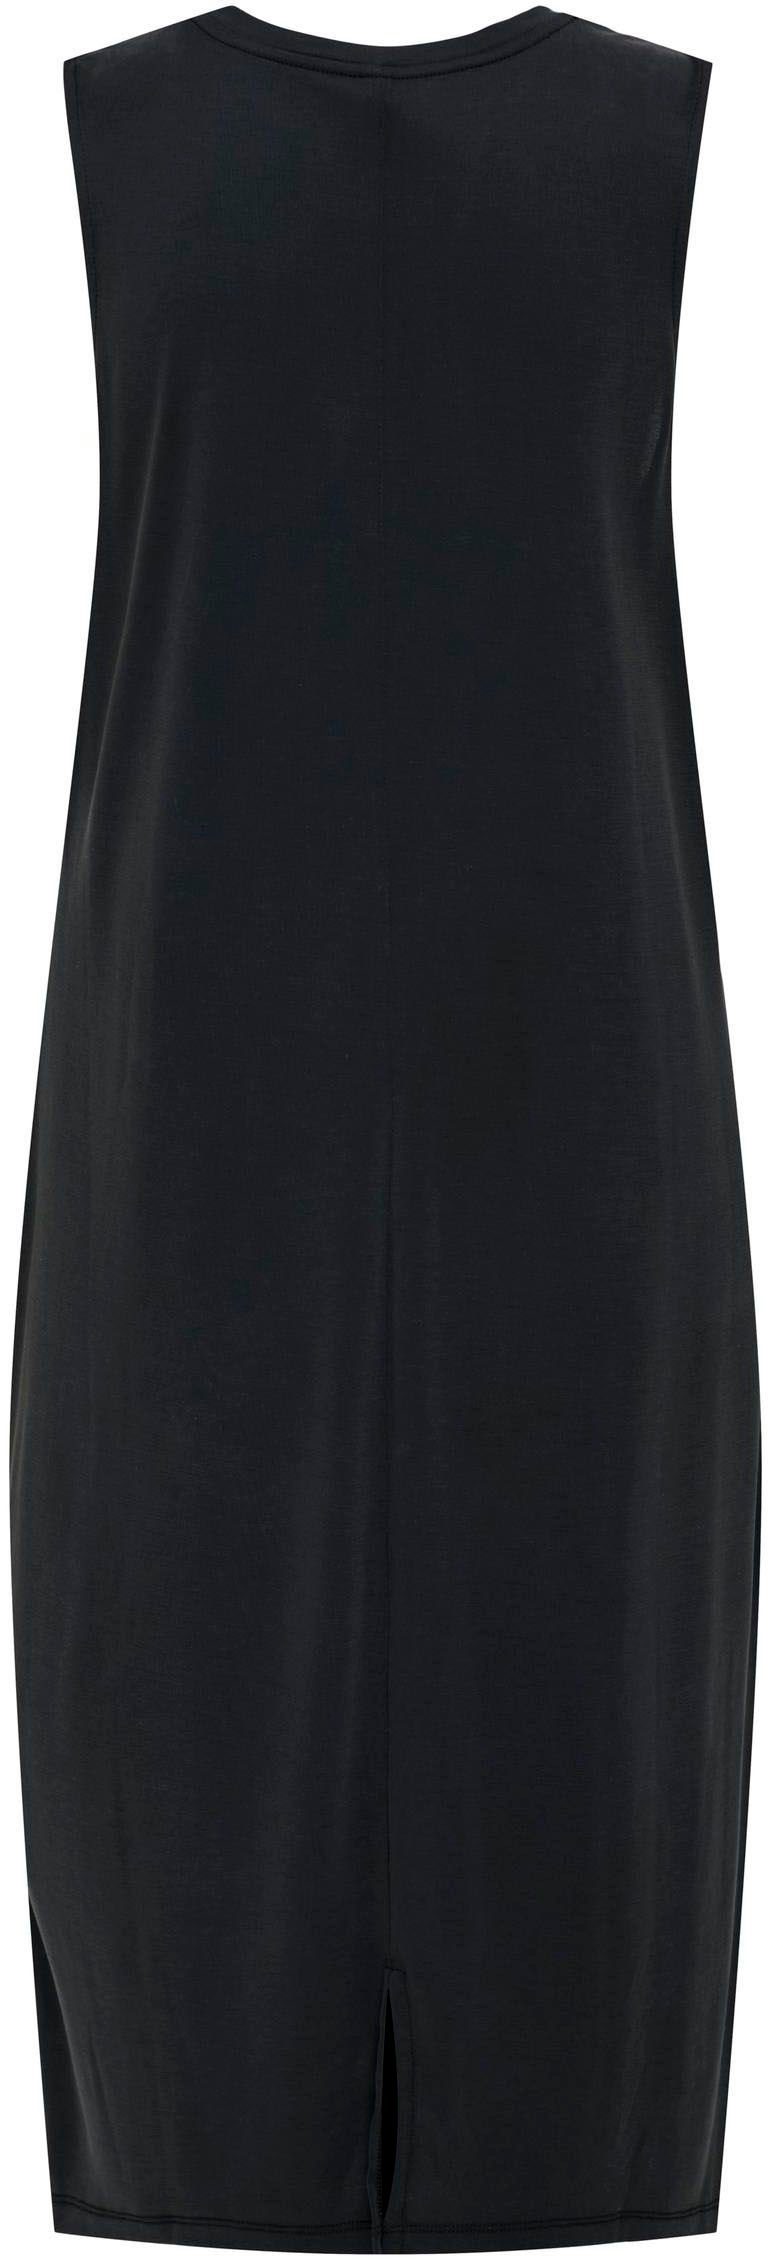 DRESS Jerseykleid Black NOOS ONLFREE MODAL ONLY Midi-Länge S/L JRS in